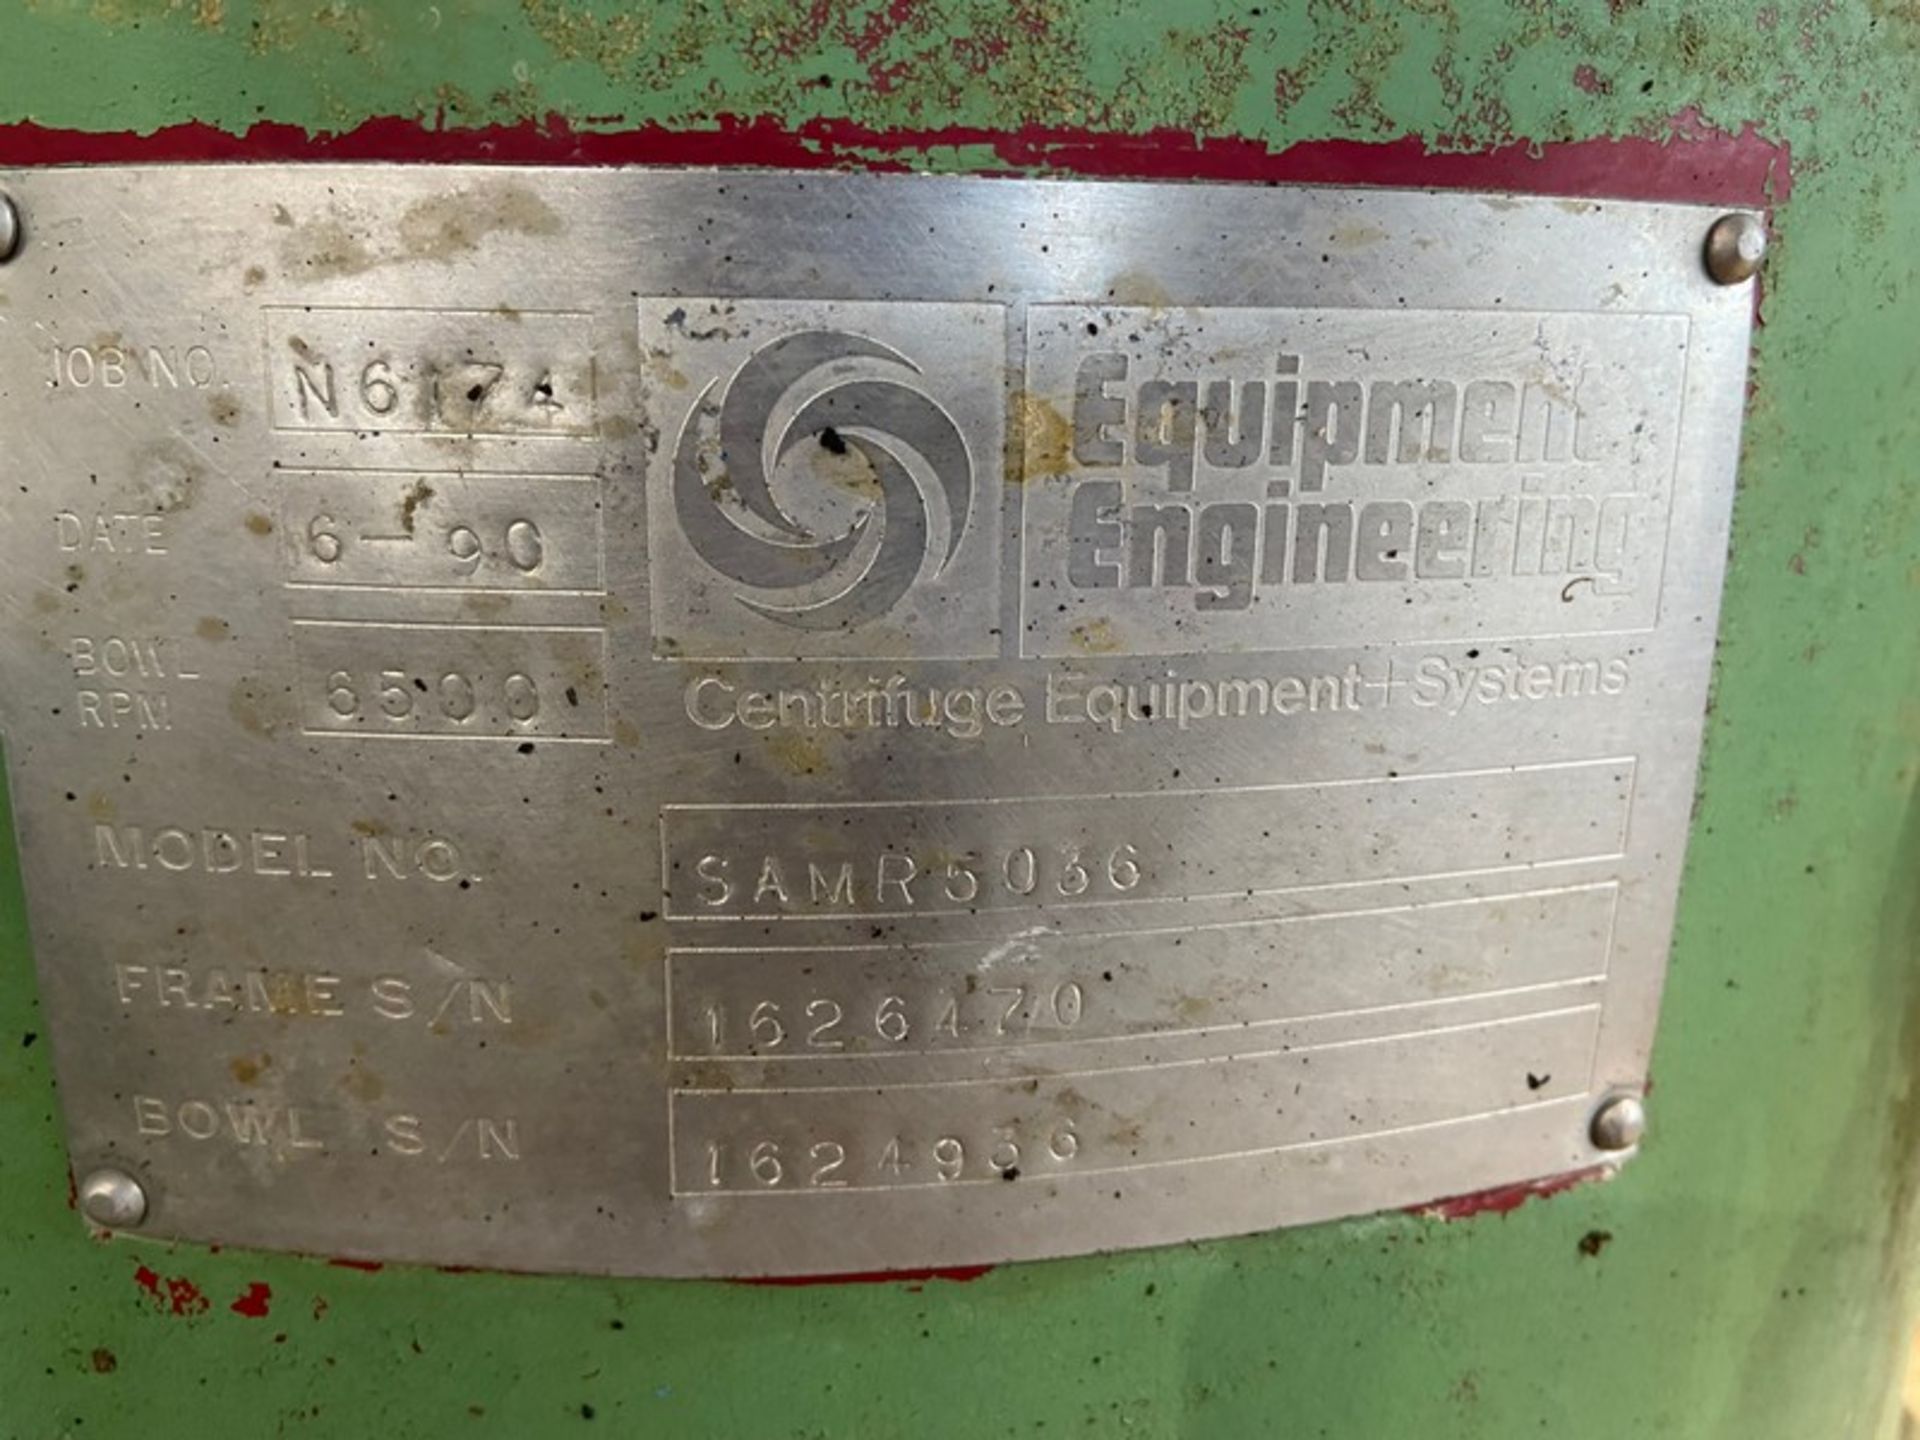 Equipment Engineering S/S Separator, Job No. N6174, Bowl RPM 6500, M/N SAMR5036, Frame S/N 1626470 - Image 8 of 15